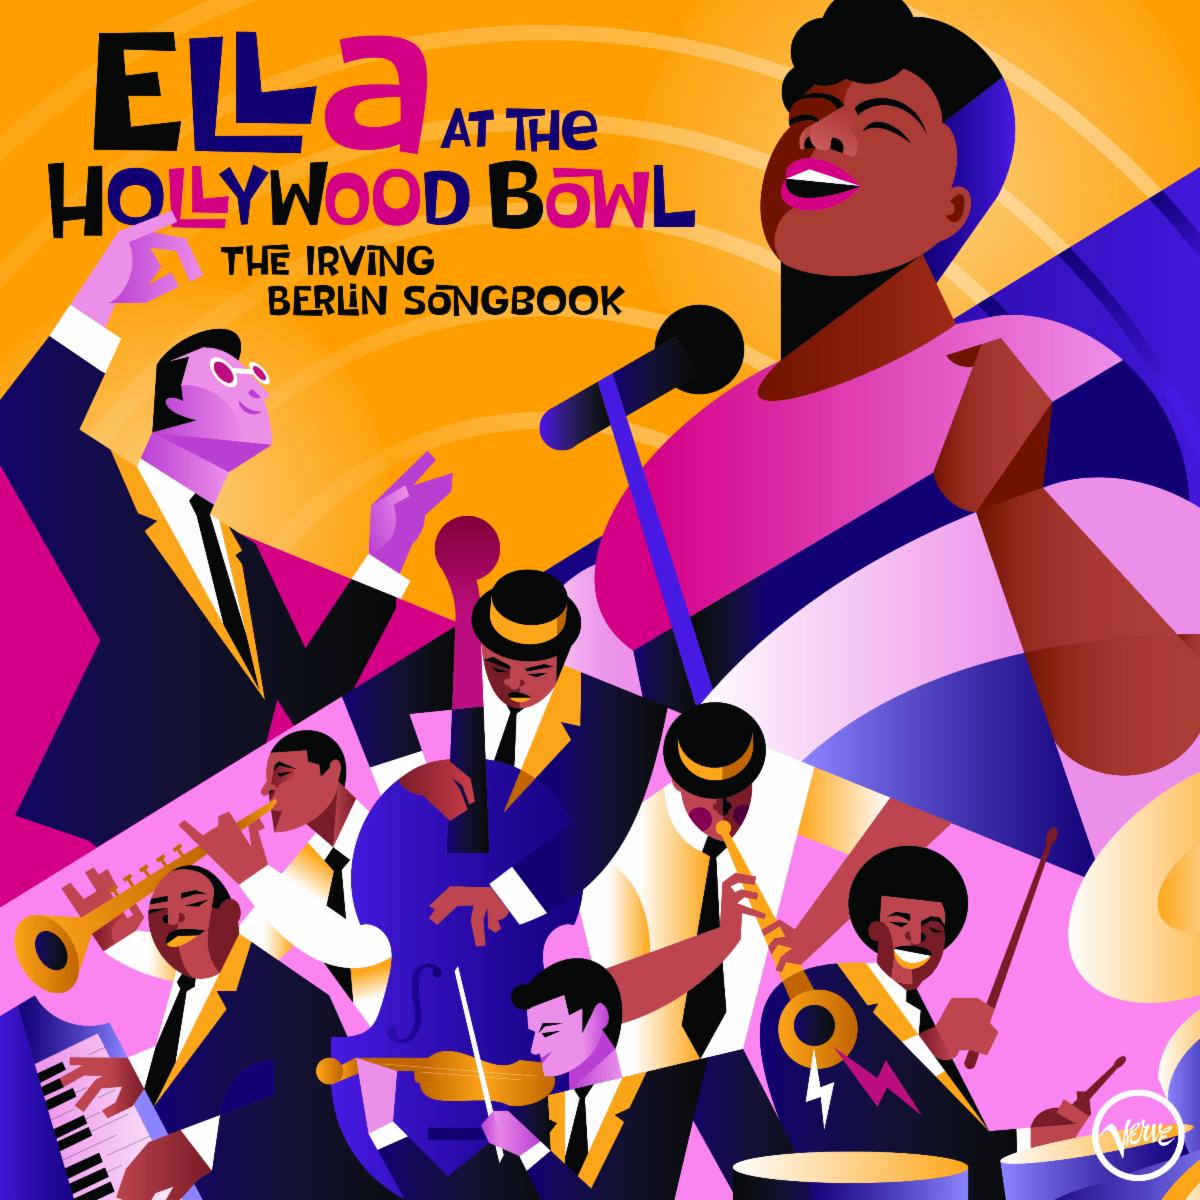 https://downbeat.com/images/reviews/Ella_Fitzgerald_Ella_at_the_Hollywood_Bowl.jpg